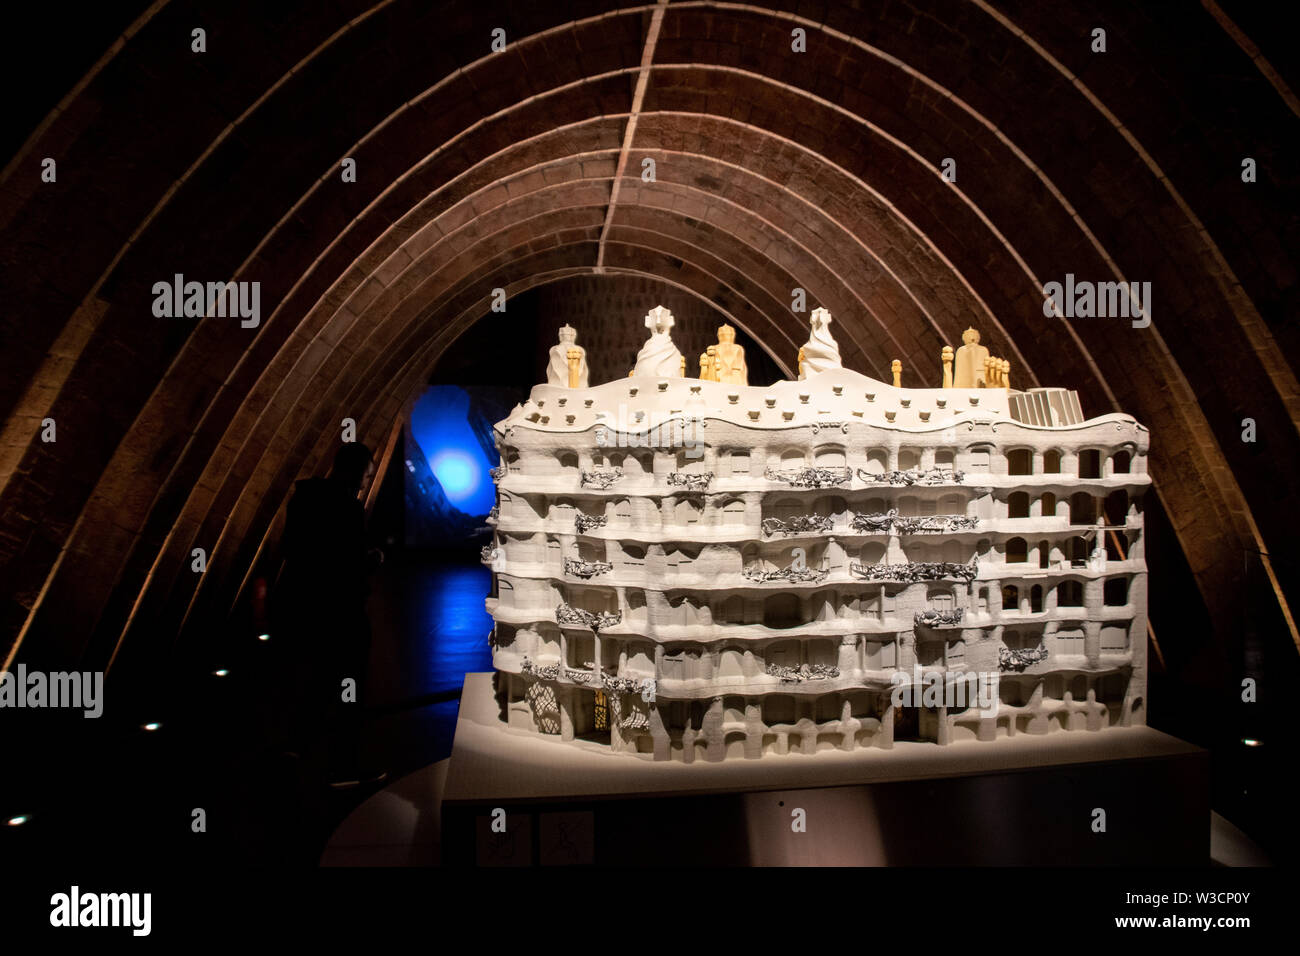 Un modèle à l'échelle de la Casa Mila situé dans une pièce inspirée par un squelette de baleine de Gaudi à Barcelone, Espagne Banque D'Images